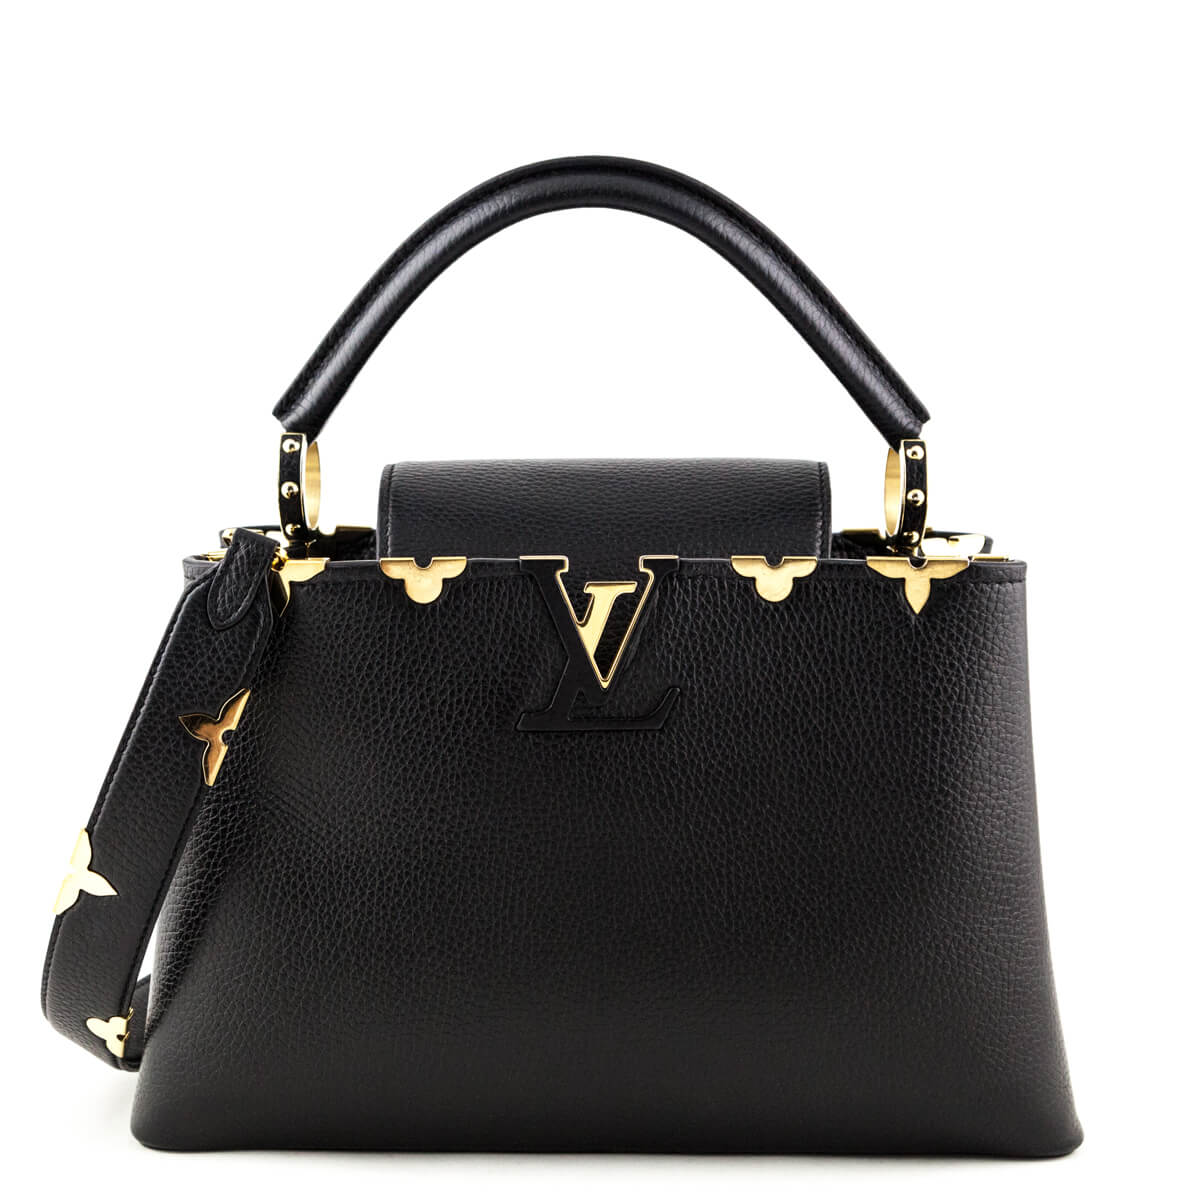 Louis Vuitton Black Taurillon Limited Edition Capucines PM